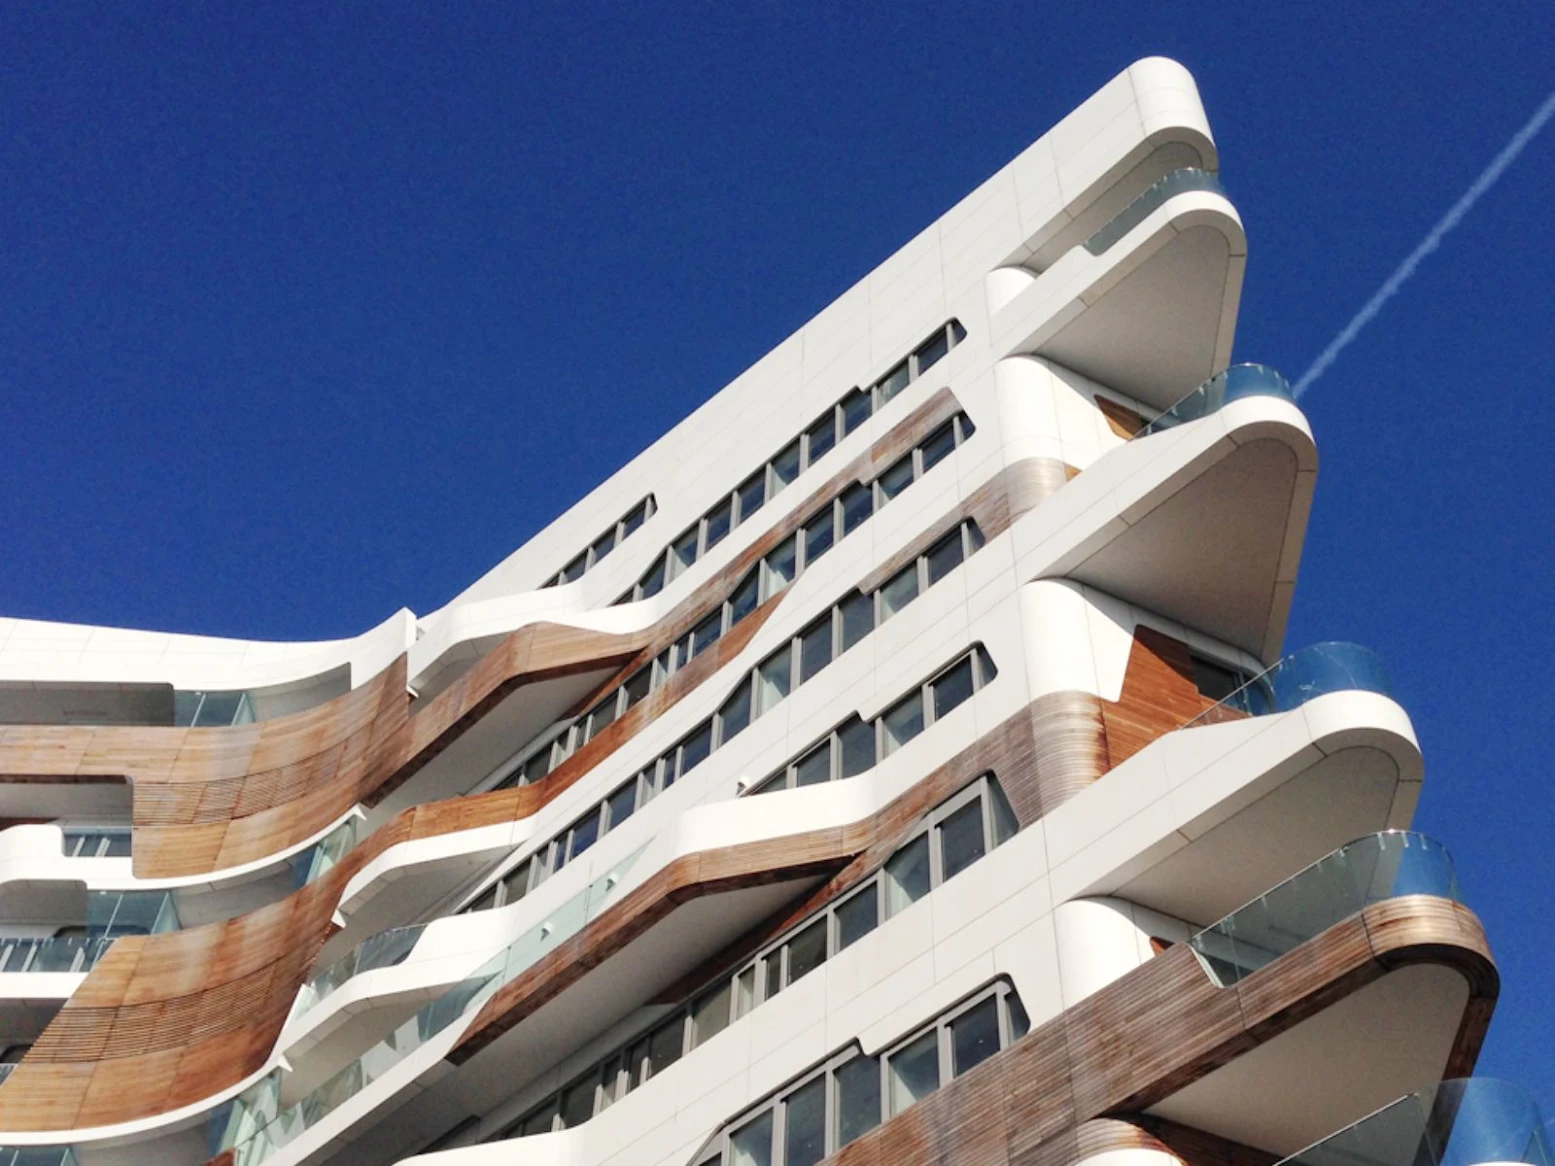 City Life Residences by Zaha Hadid Architects